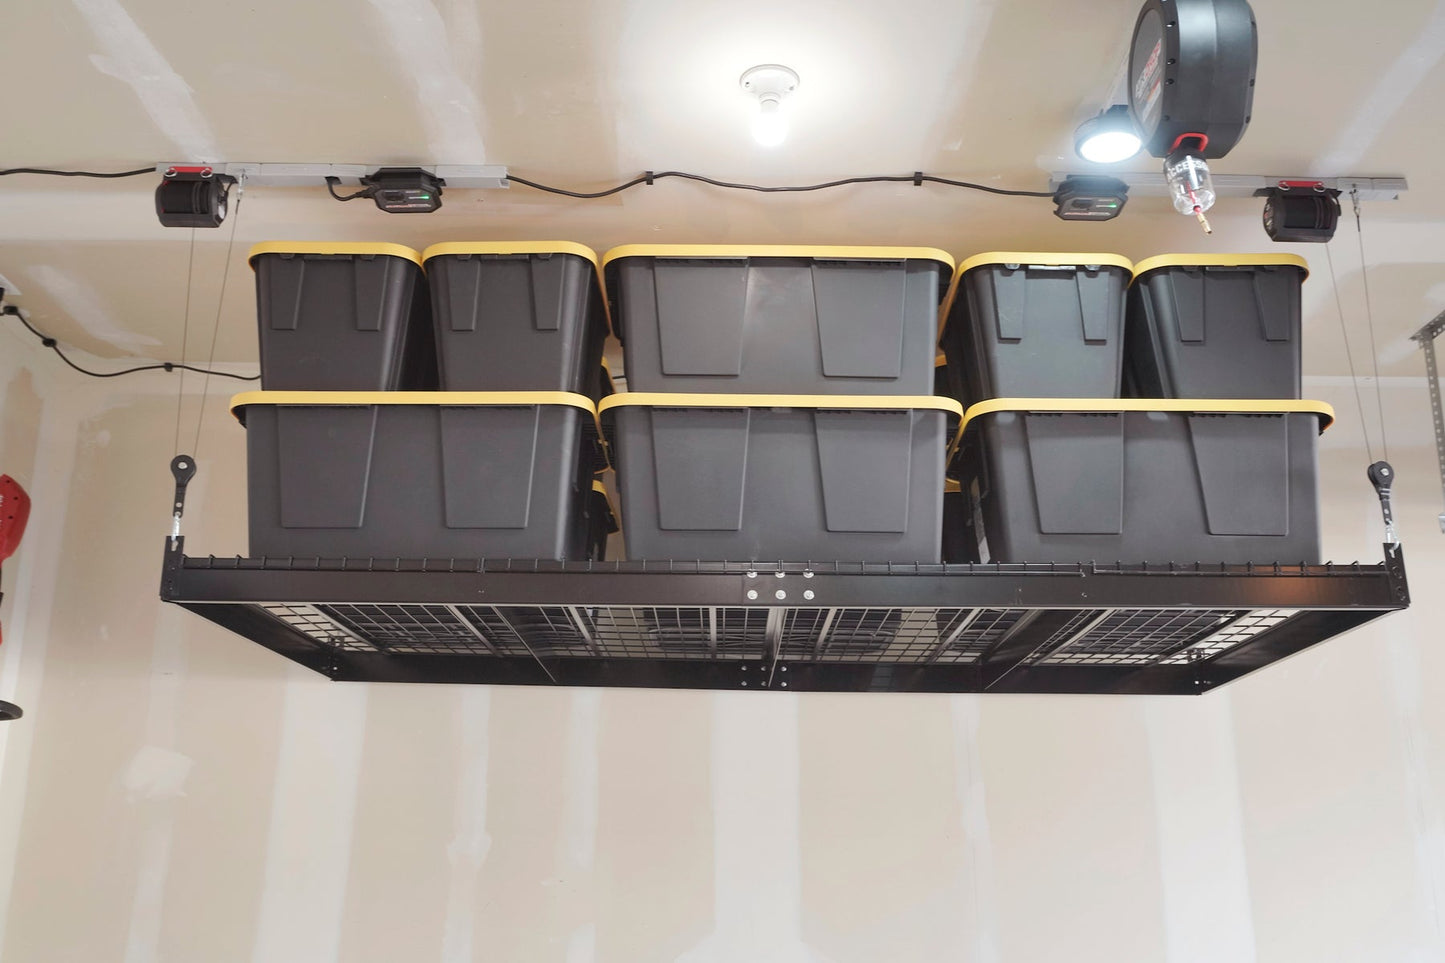 Overhead Storage - Garage Smart 4' X 8' Platform Lifter